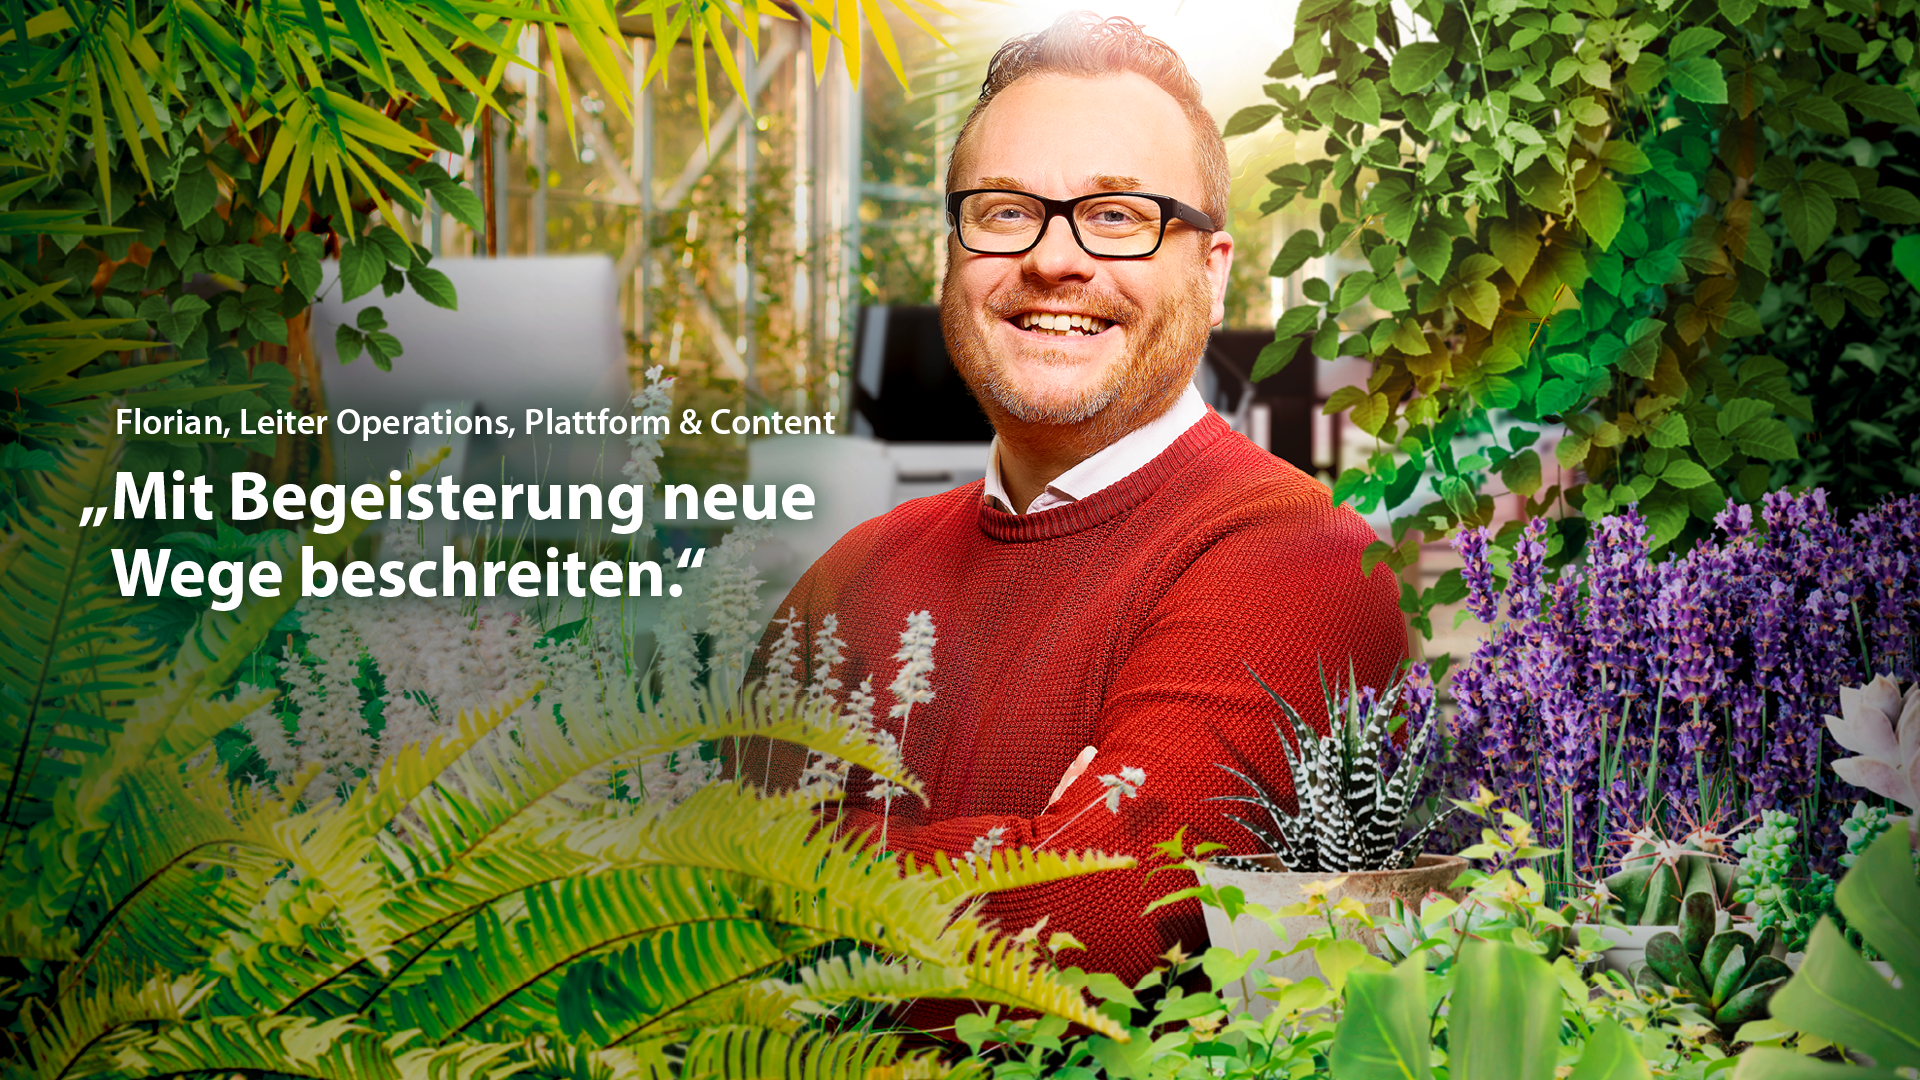 Plakat: Person umgeben von Grünen Pflanzen, Text: "Mit Begeisterung neue Wege beschreiten."